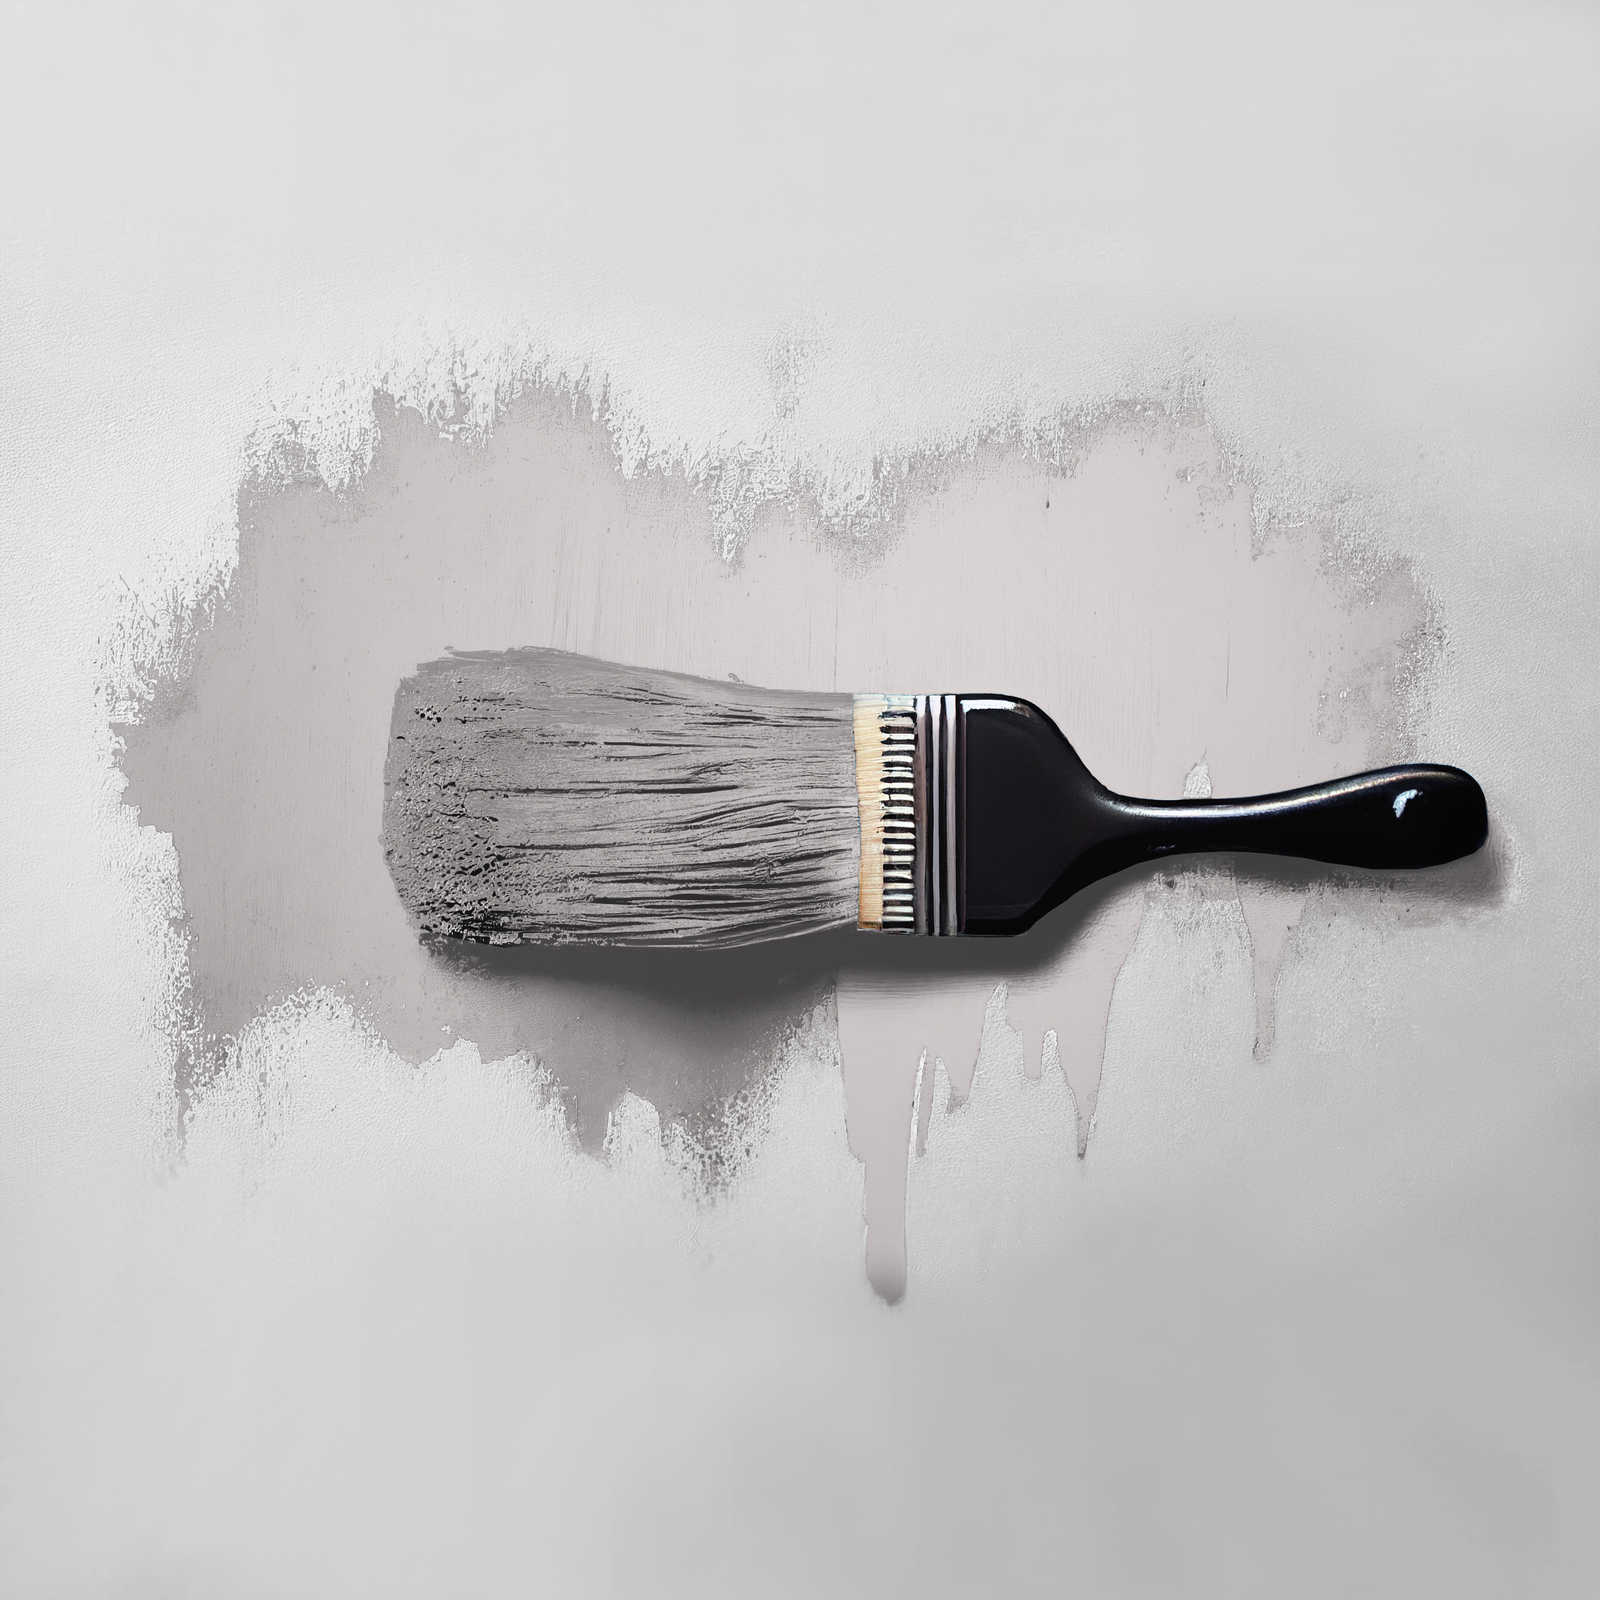             Peinture murale TCK2000 »Calm Clam« en gris chaleureux – 2,5 litres
        